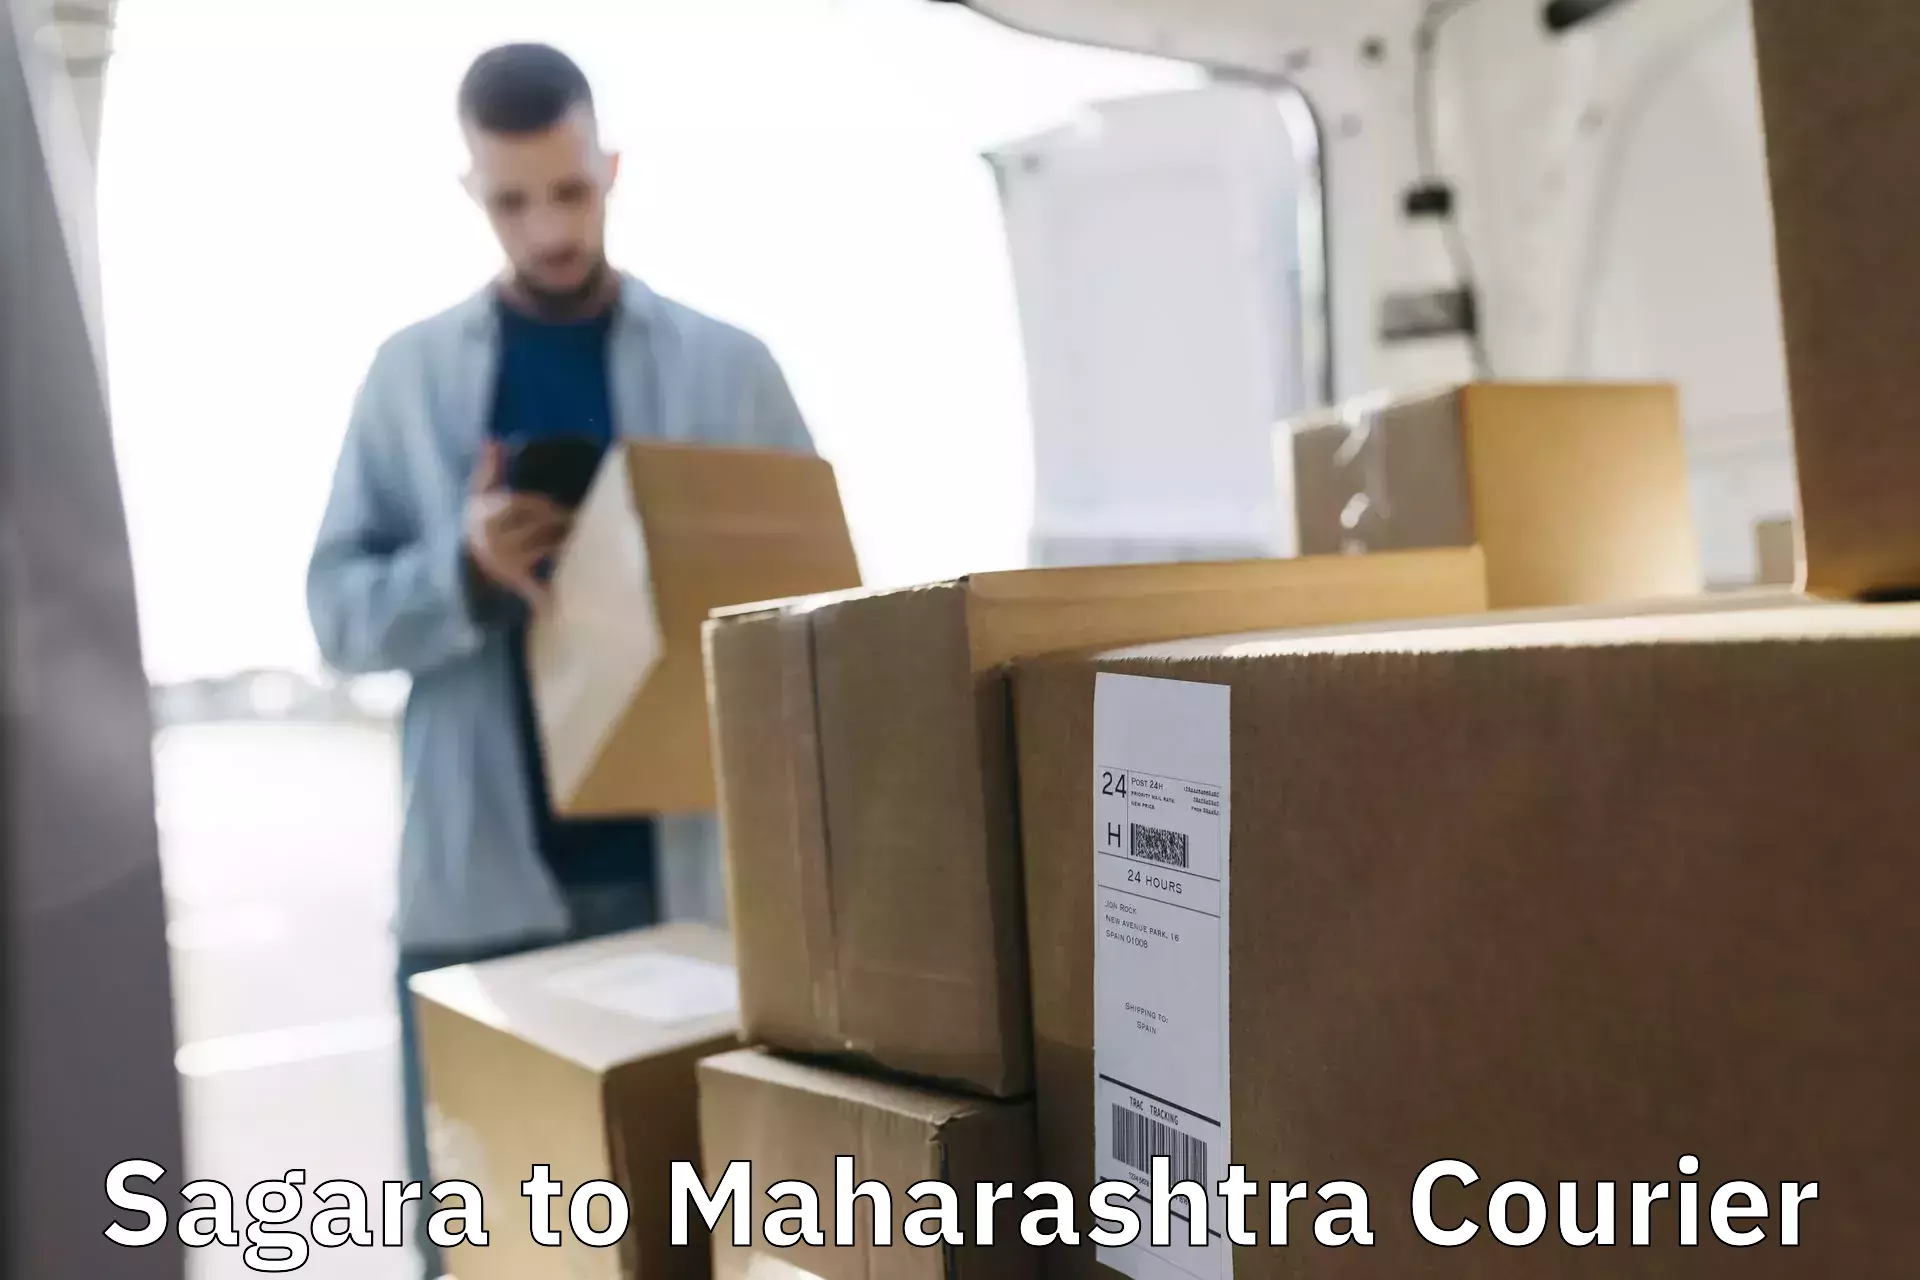 Express delivery network Sagara to Mahabaleshwar